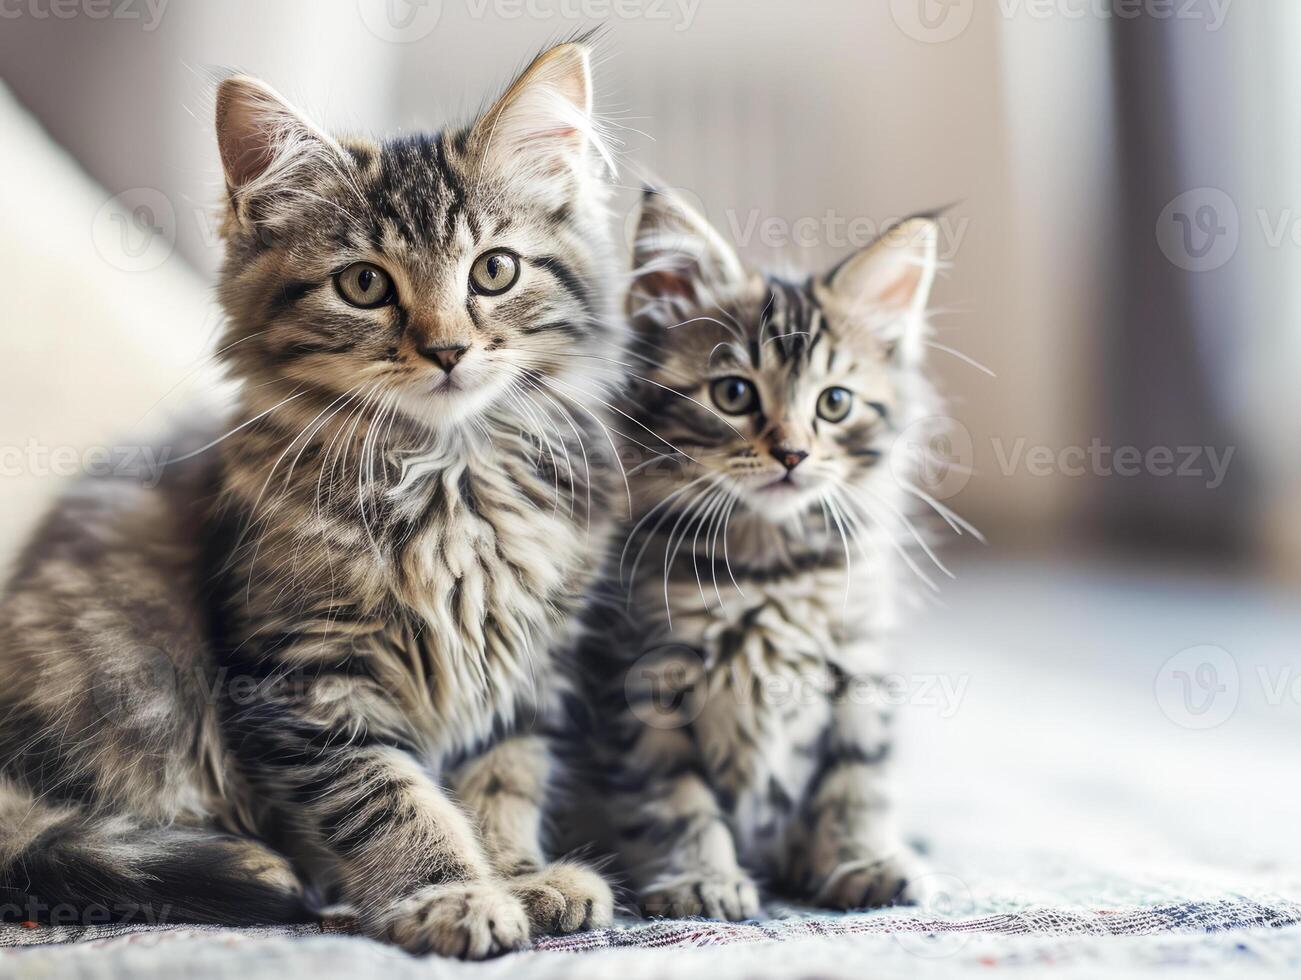 cat sitting with kitten, cute little kittens on floor, selective focus. photo